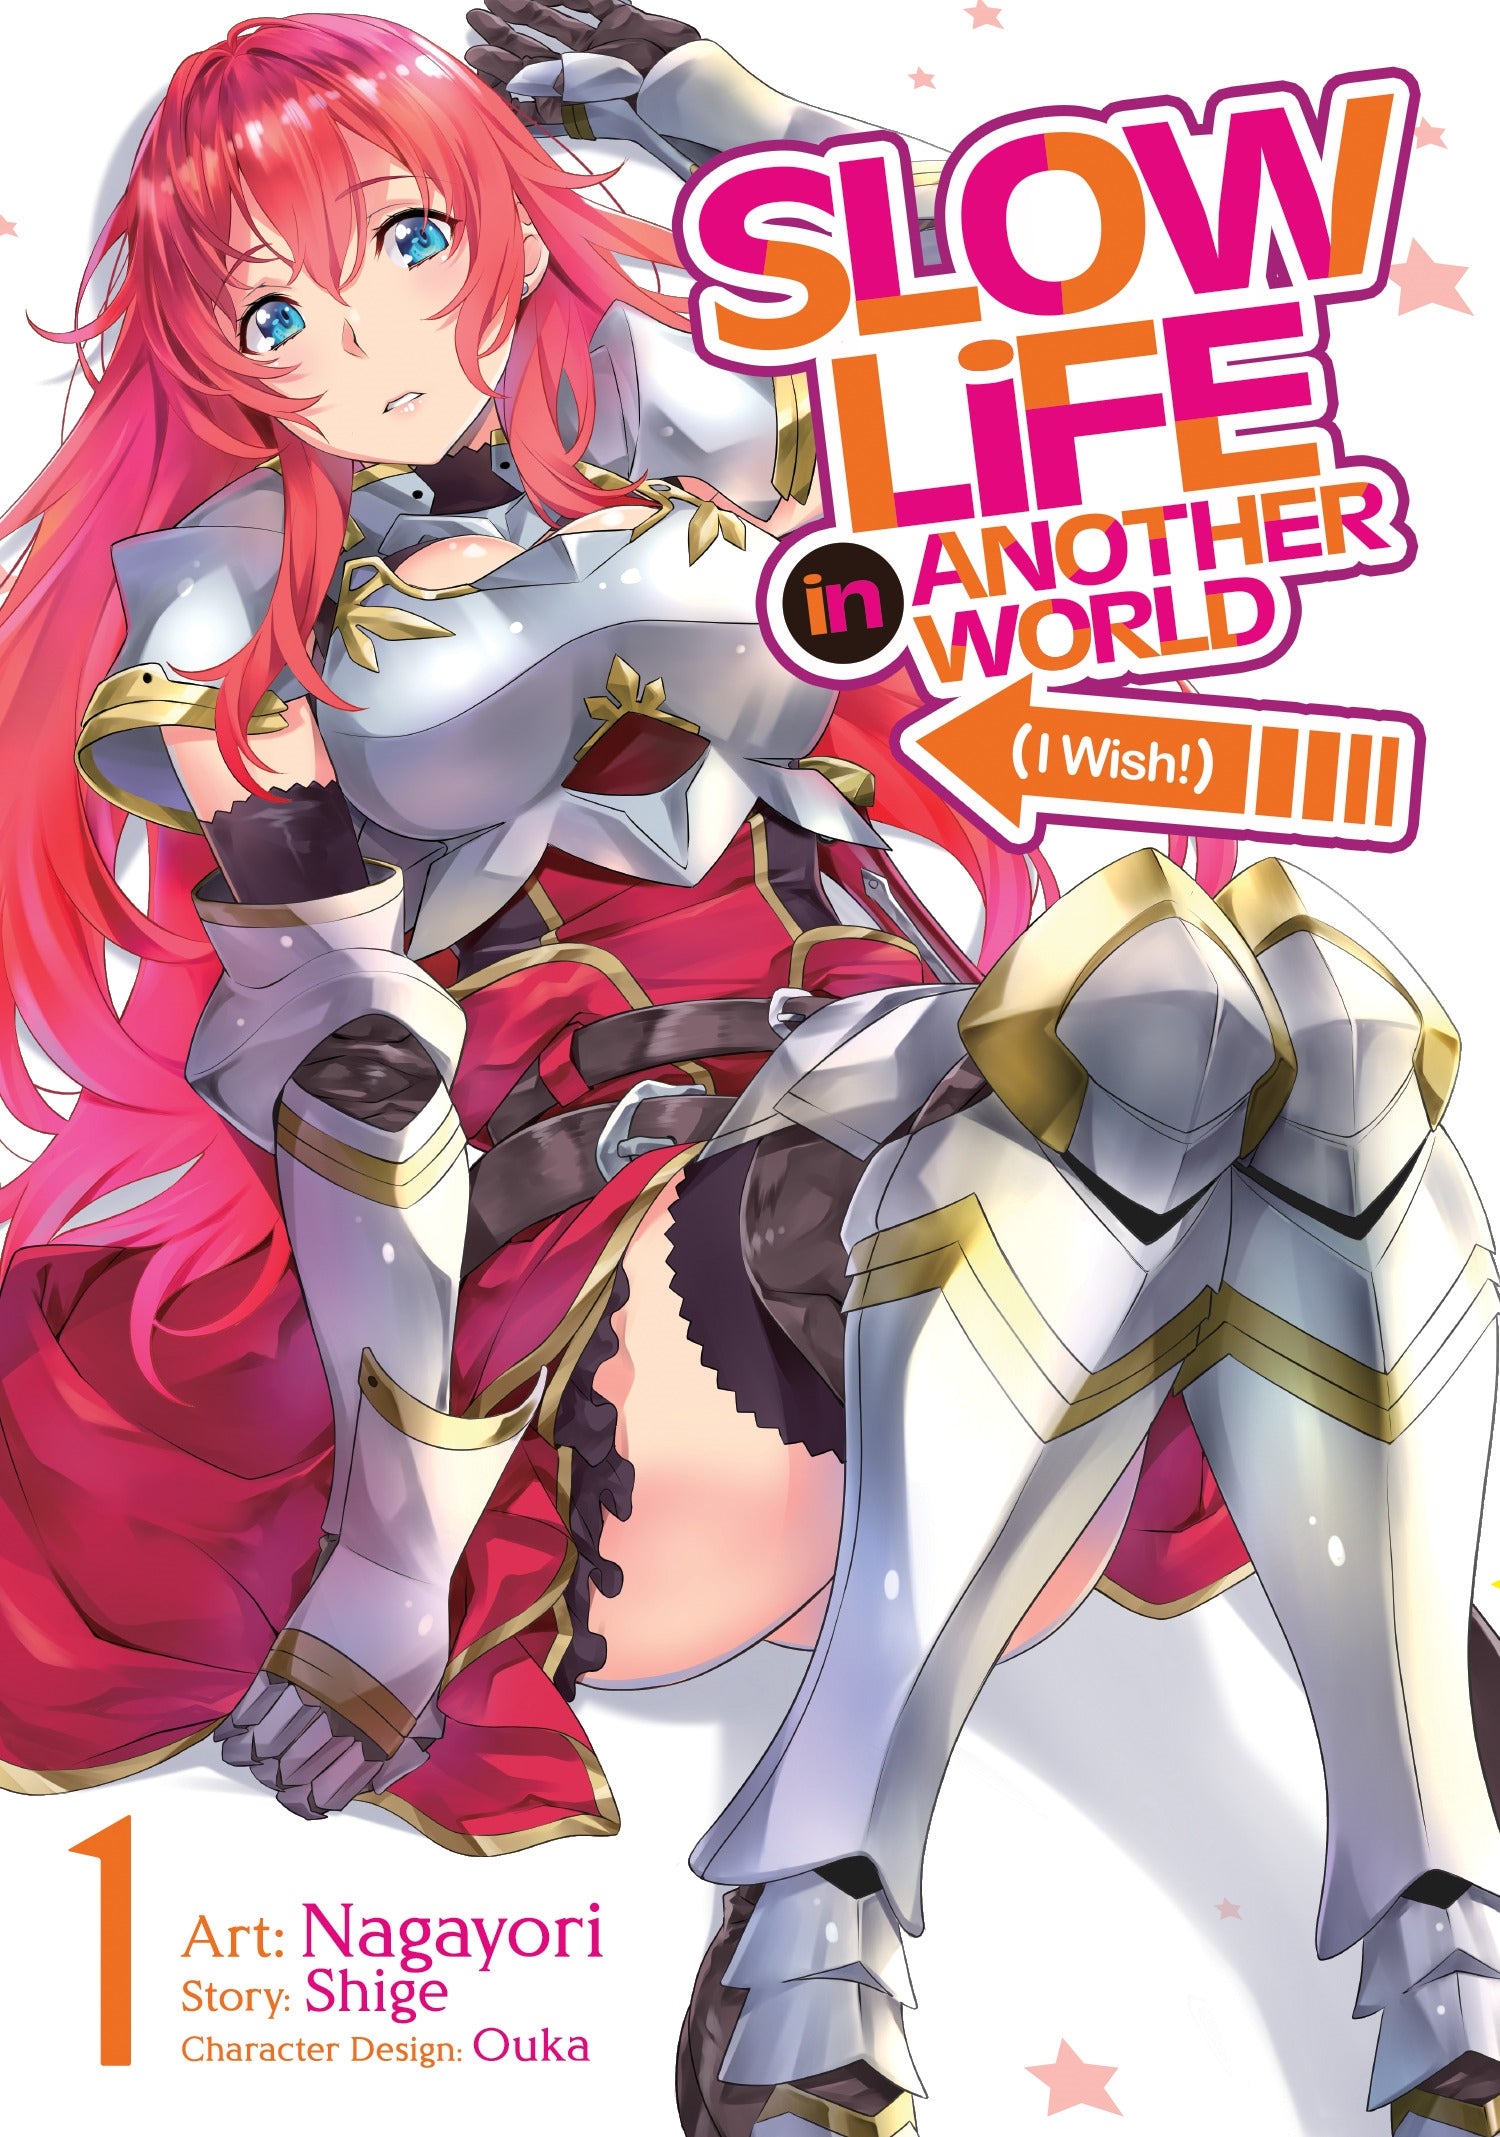 Slow Life In Another World (I Wish!) (Manga) Vol. 1 - Manga Warehouse